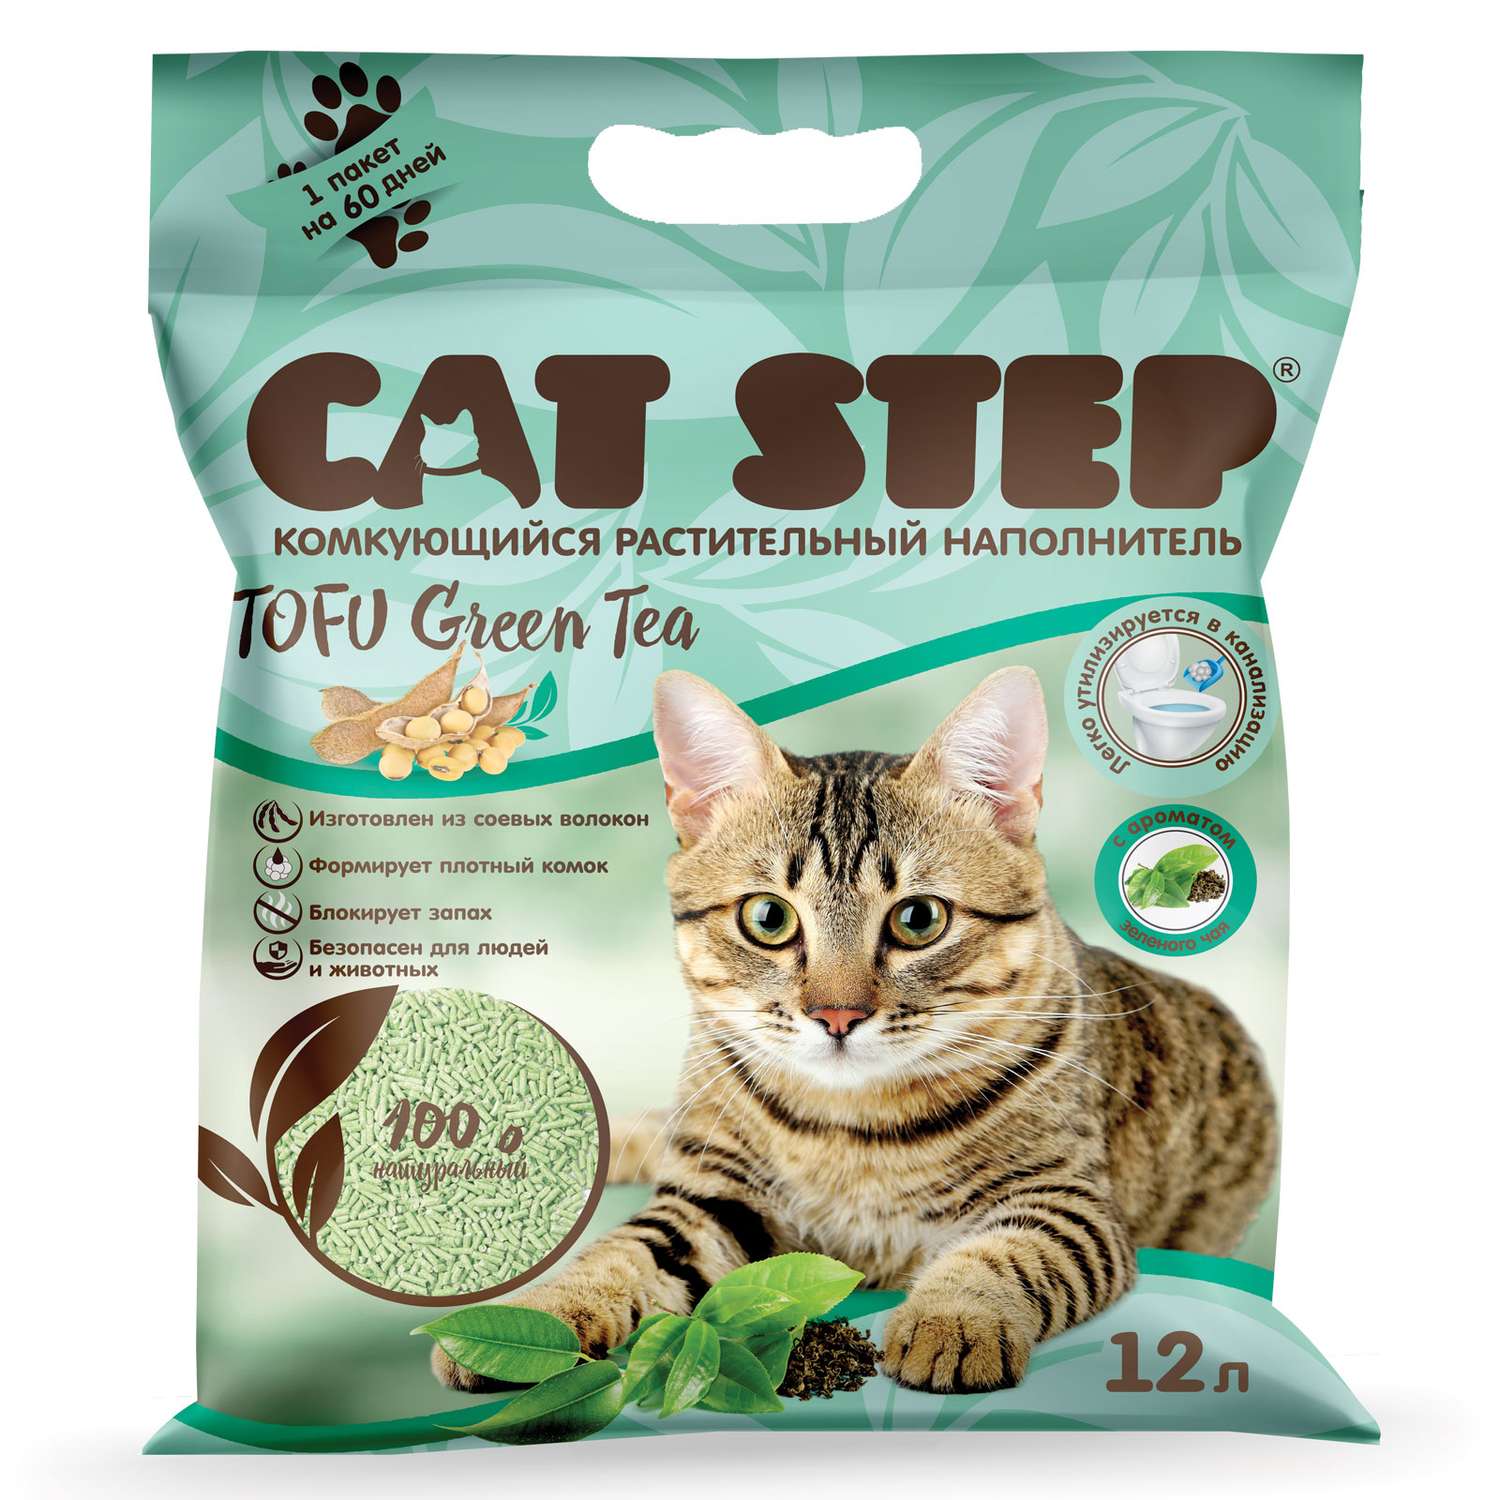 Наполнитель для кошачьего туалета Cat Step Tofu Green Tea комкующийся растительный 12л - фото 1